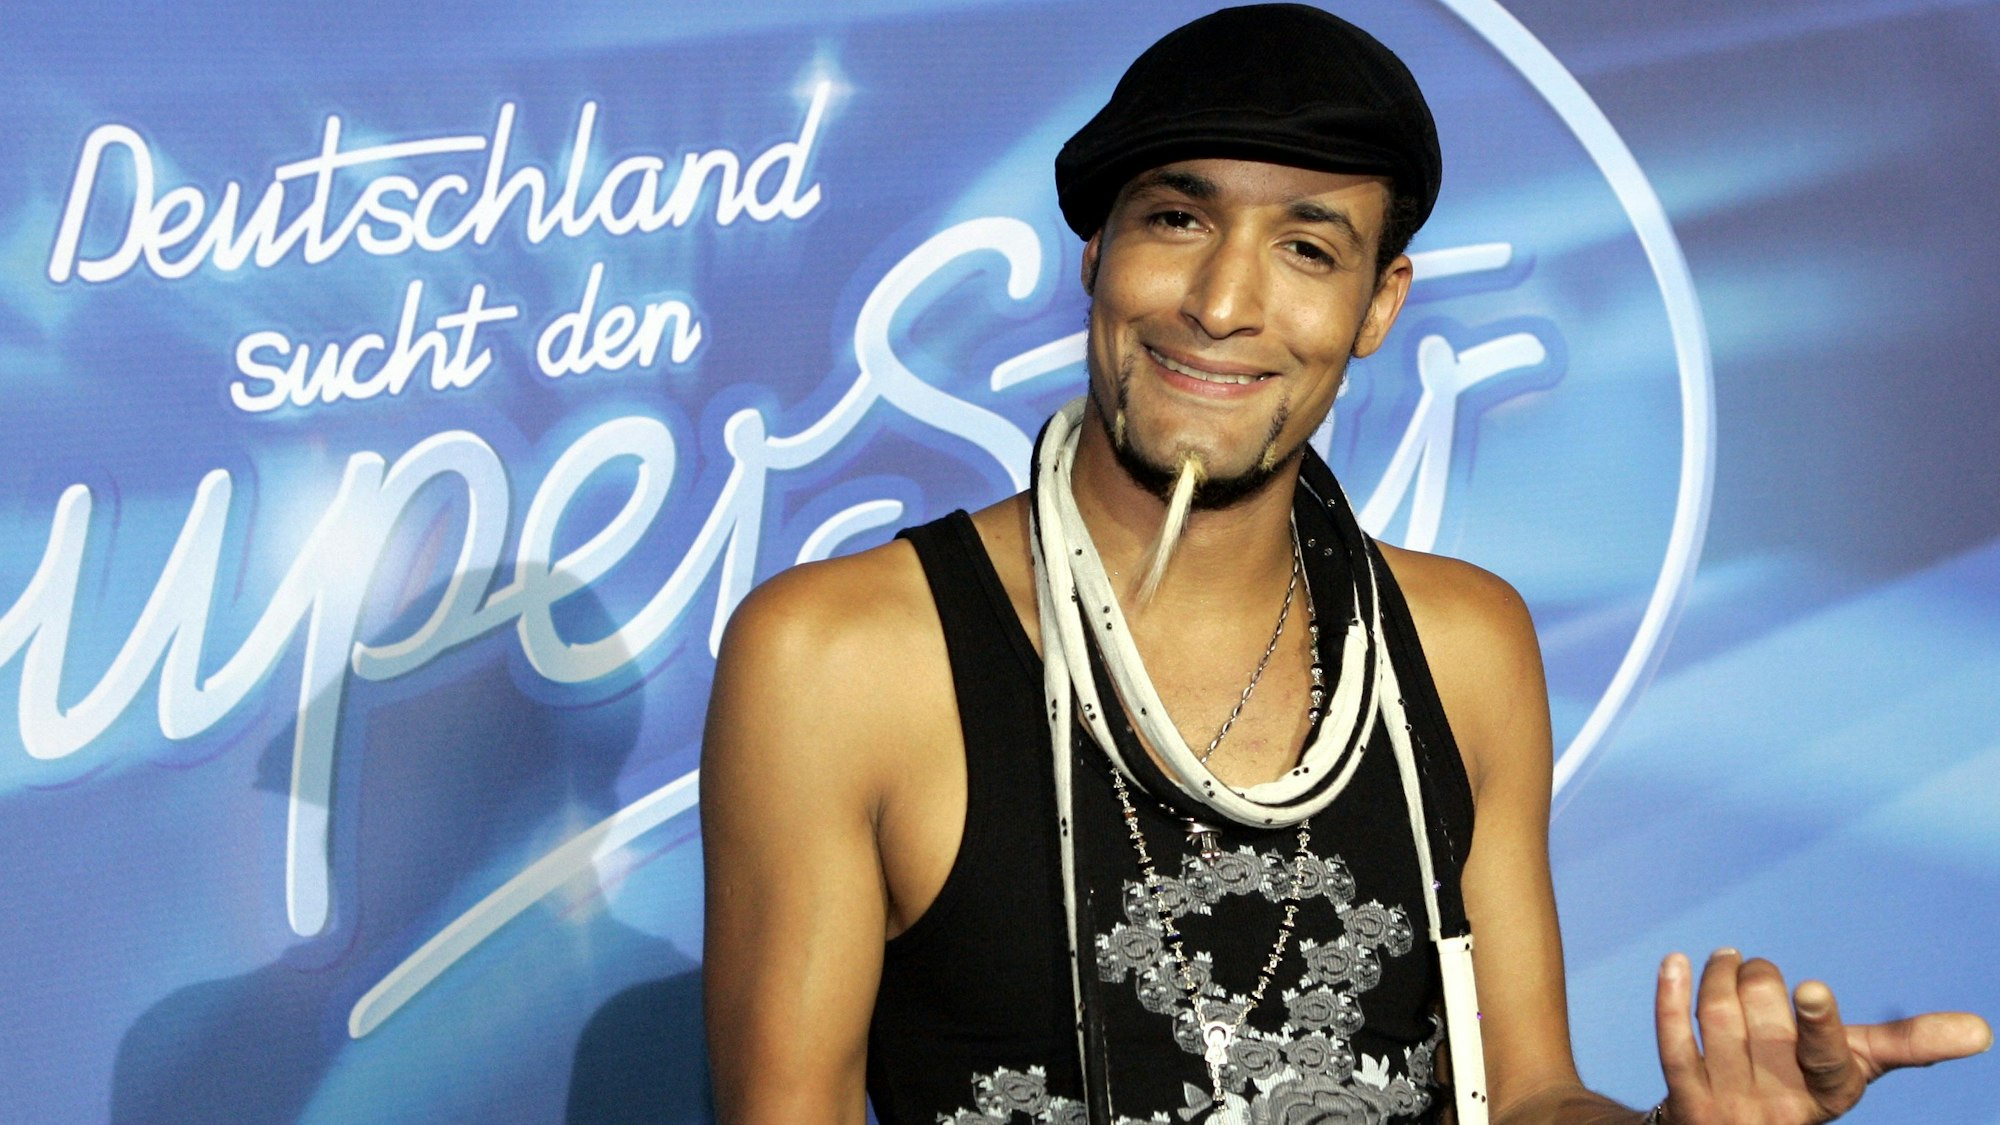 Mark Medlock gewinnt das Finale des RTL-Gesangswettbewerbs „Deutschland sucht den Superstar“ am Samstag (05.05.2007) in Köln.